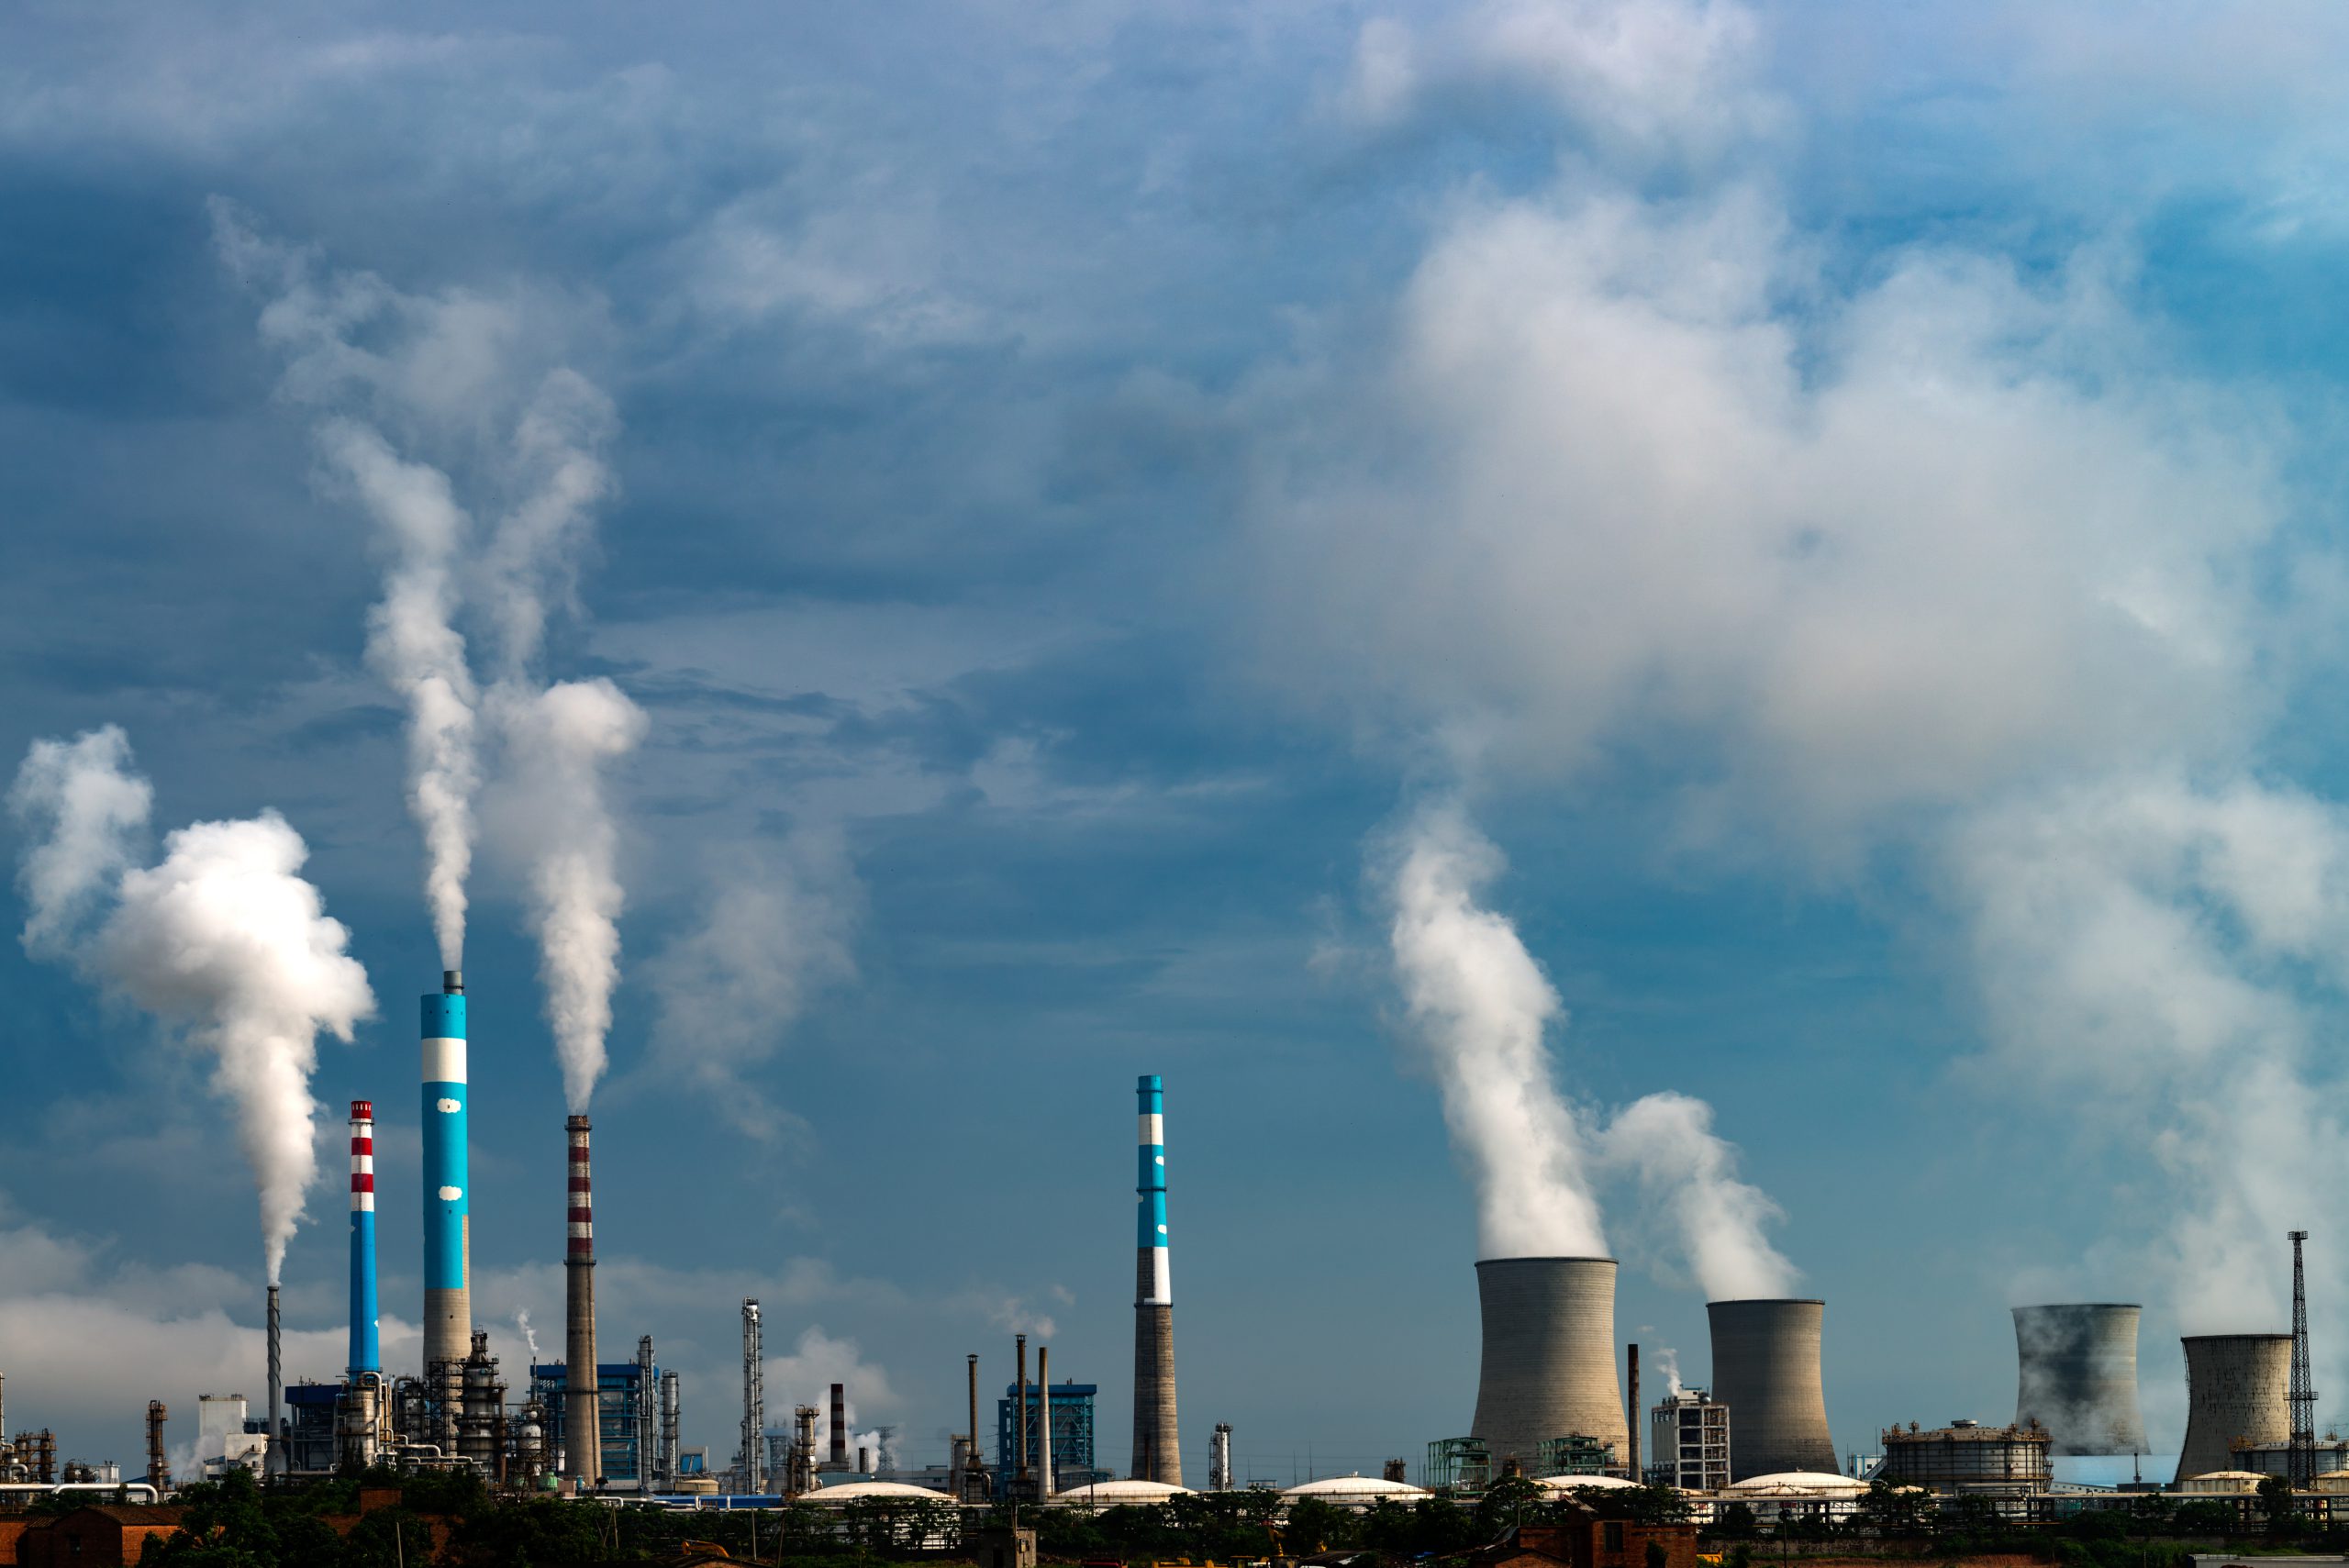 Status onderzoek intrekking vergunning Kooks- en gasfabrieken Tata Steel